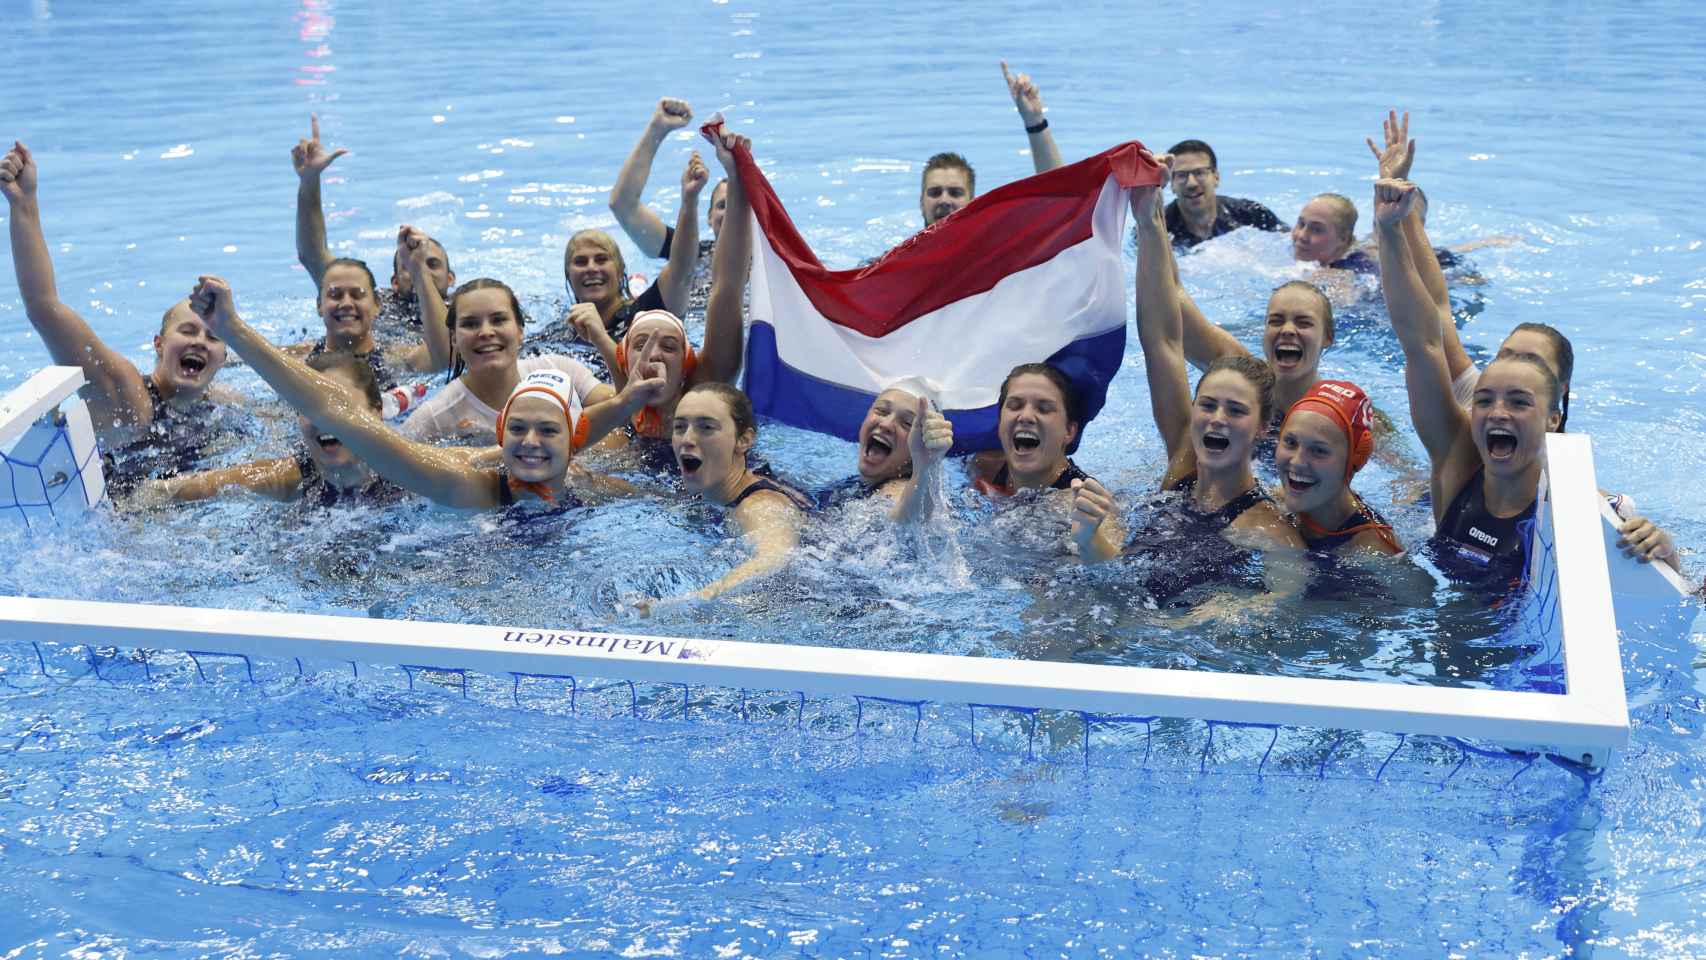 La selección de Países Bajos celebra la victoria en la final del Mundial de waterpolo femenino